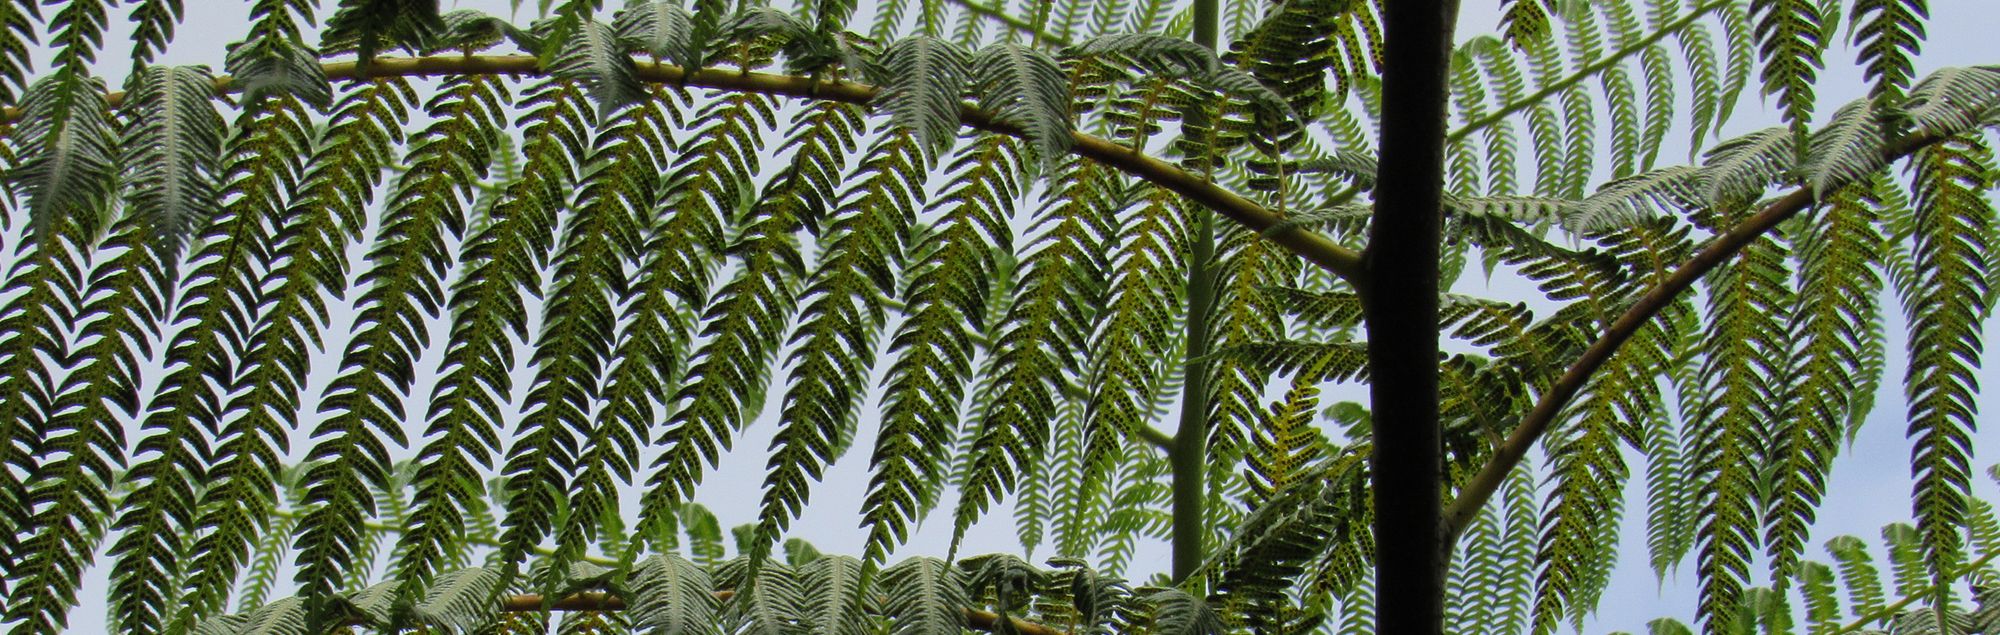 Rare plant of Guam, Cyathea lunulata.